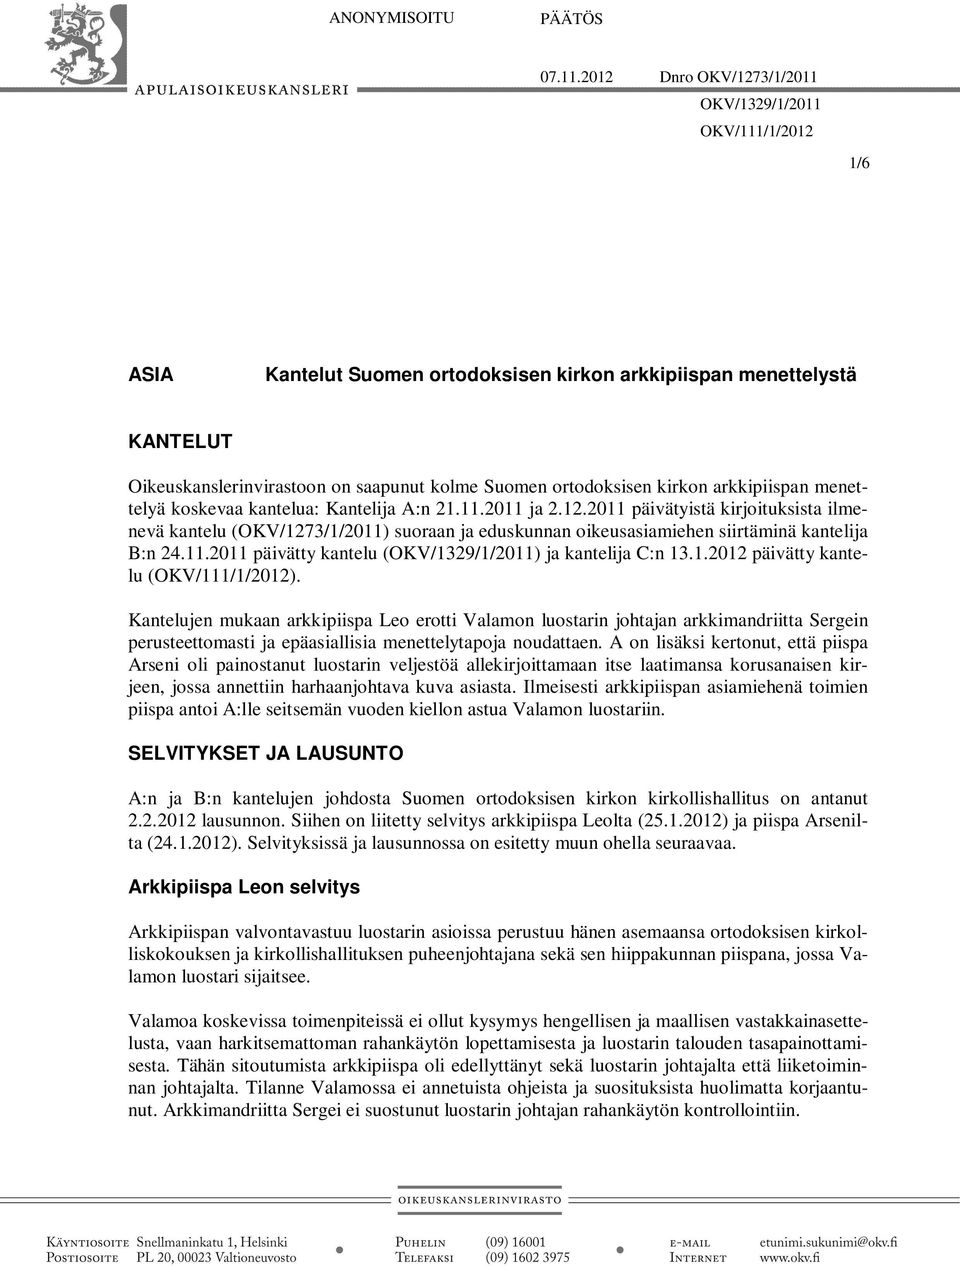 kirkon arkkipiispan menettelyä koskevaa kantelua: Kantelija A:n 21.11.2011 ja 2.12.